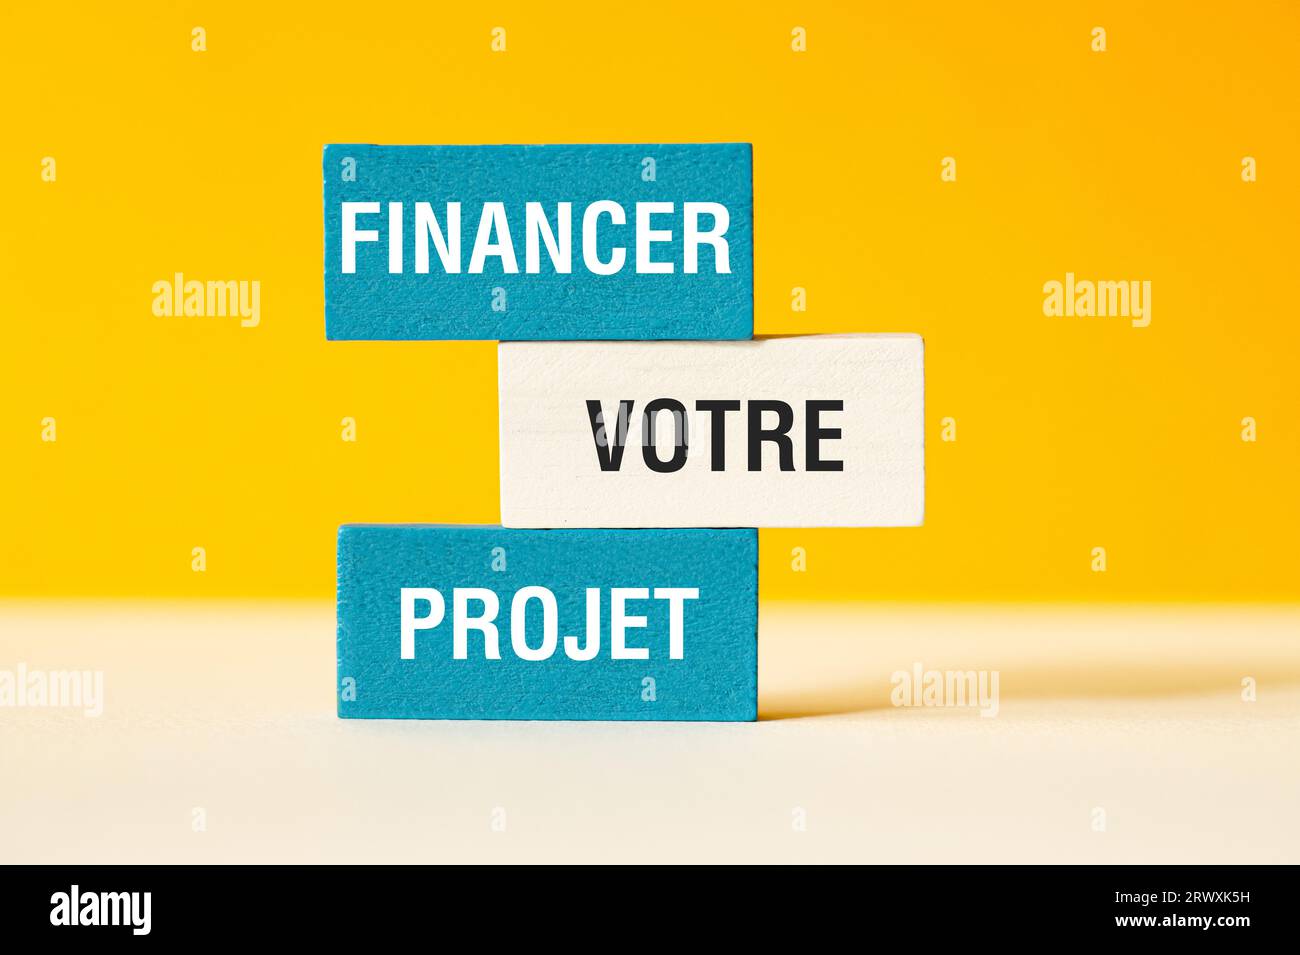 Finanzierer Wählerprojekt - Finanzieren Sie Ihr Projekt - Wortkonzept auf Bausteinen, Text Stockfoto